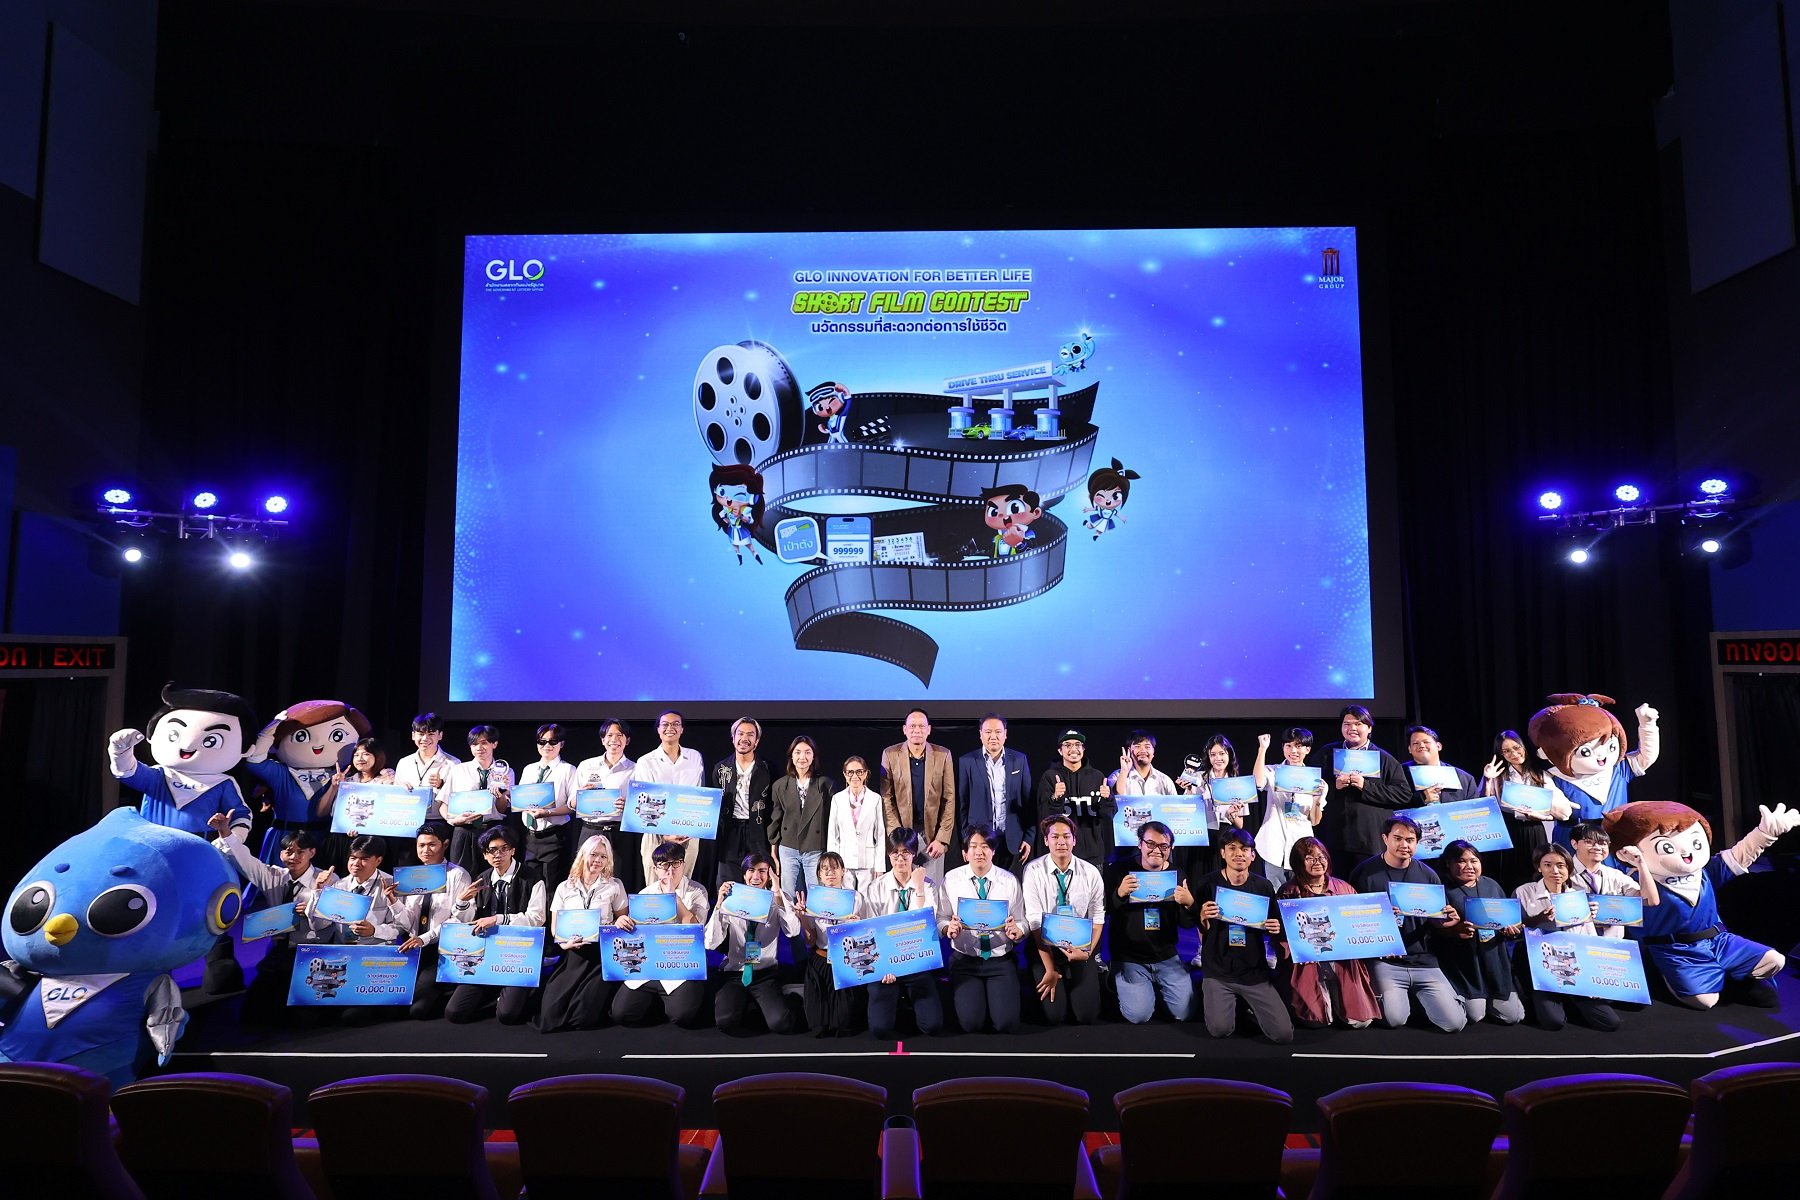 ประกาศแชมป์การประกวด “GLO INNOVATION SHORT FILM CONTEST 2024”